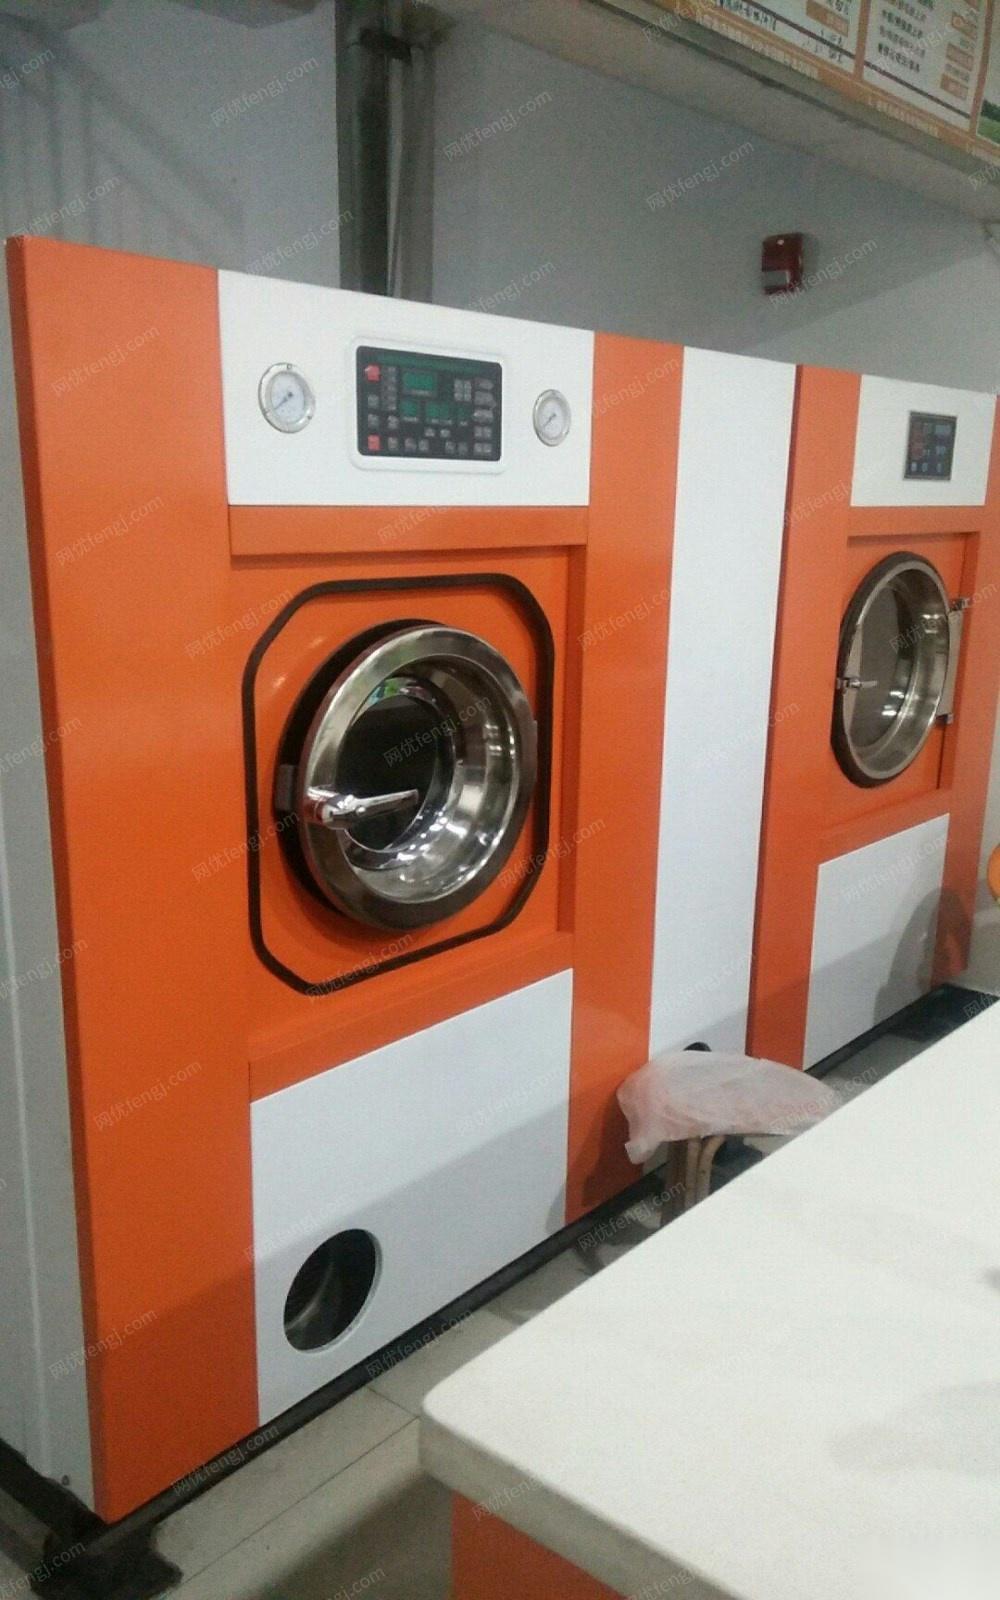 北京朝阳区9成新连锁干洗店机器设备低价出售 15000元